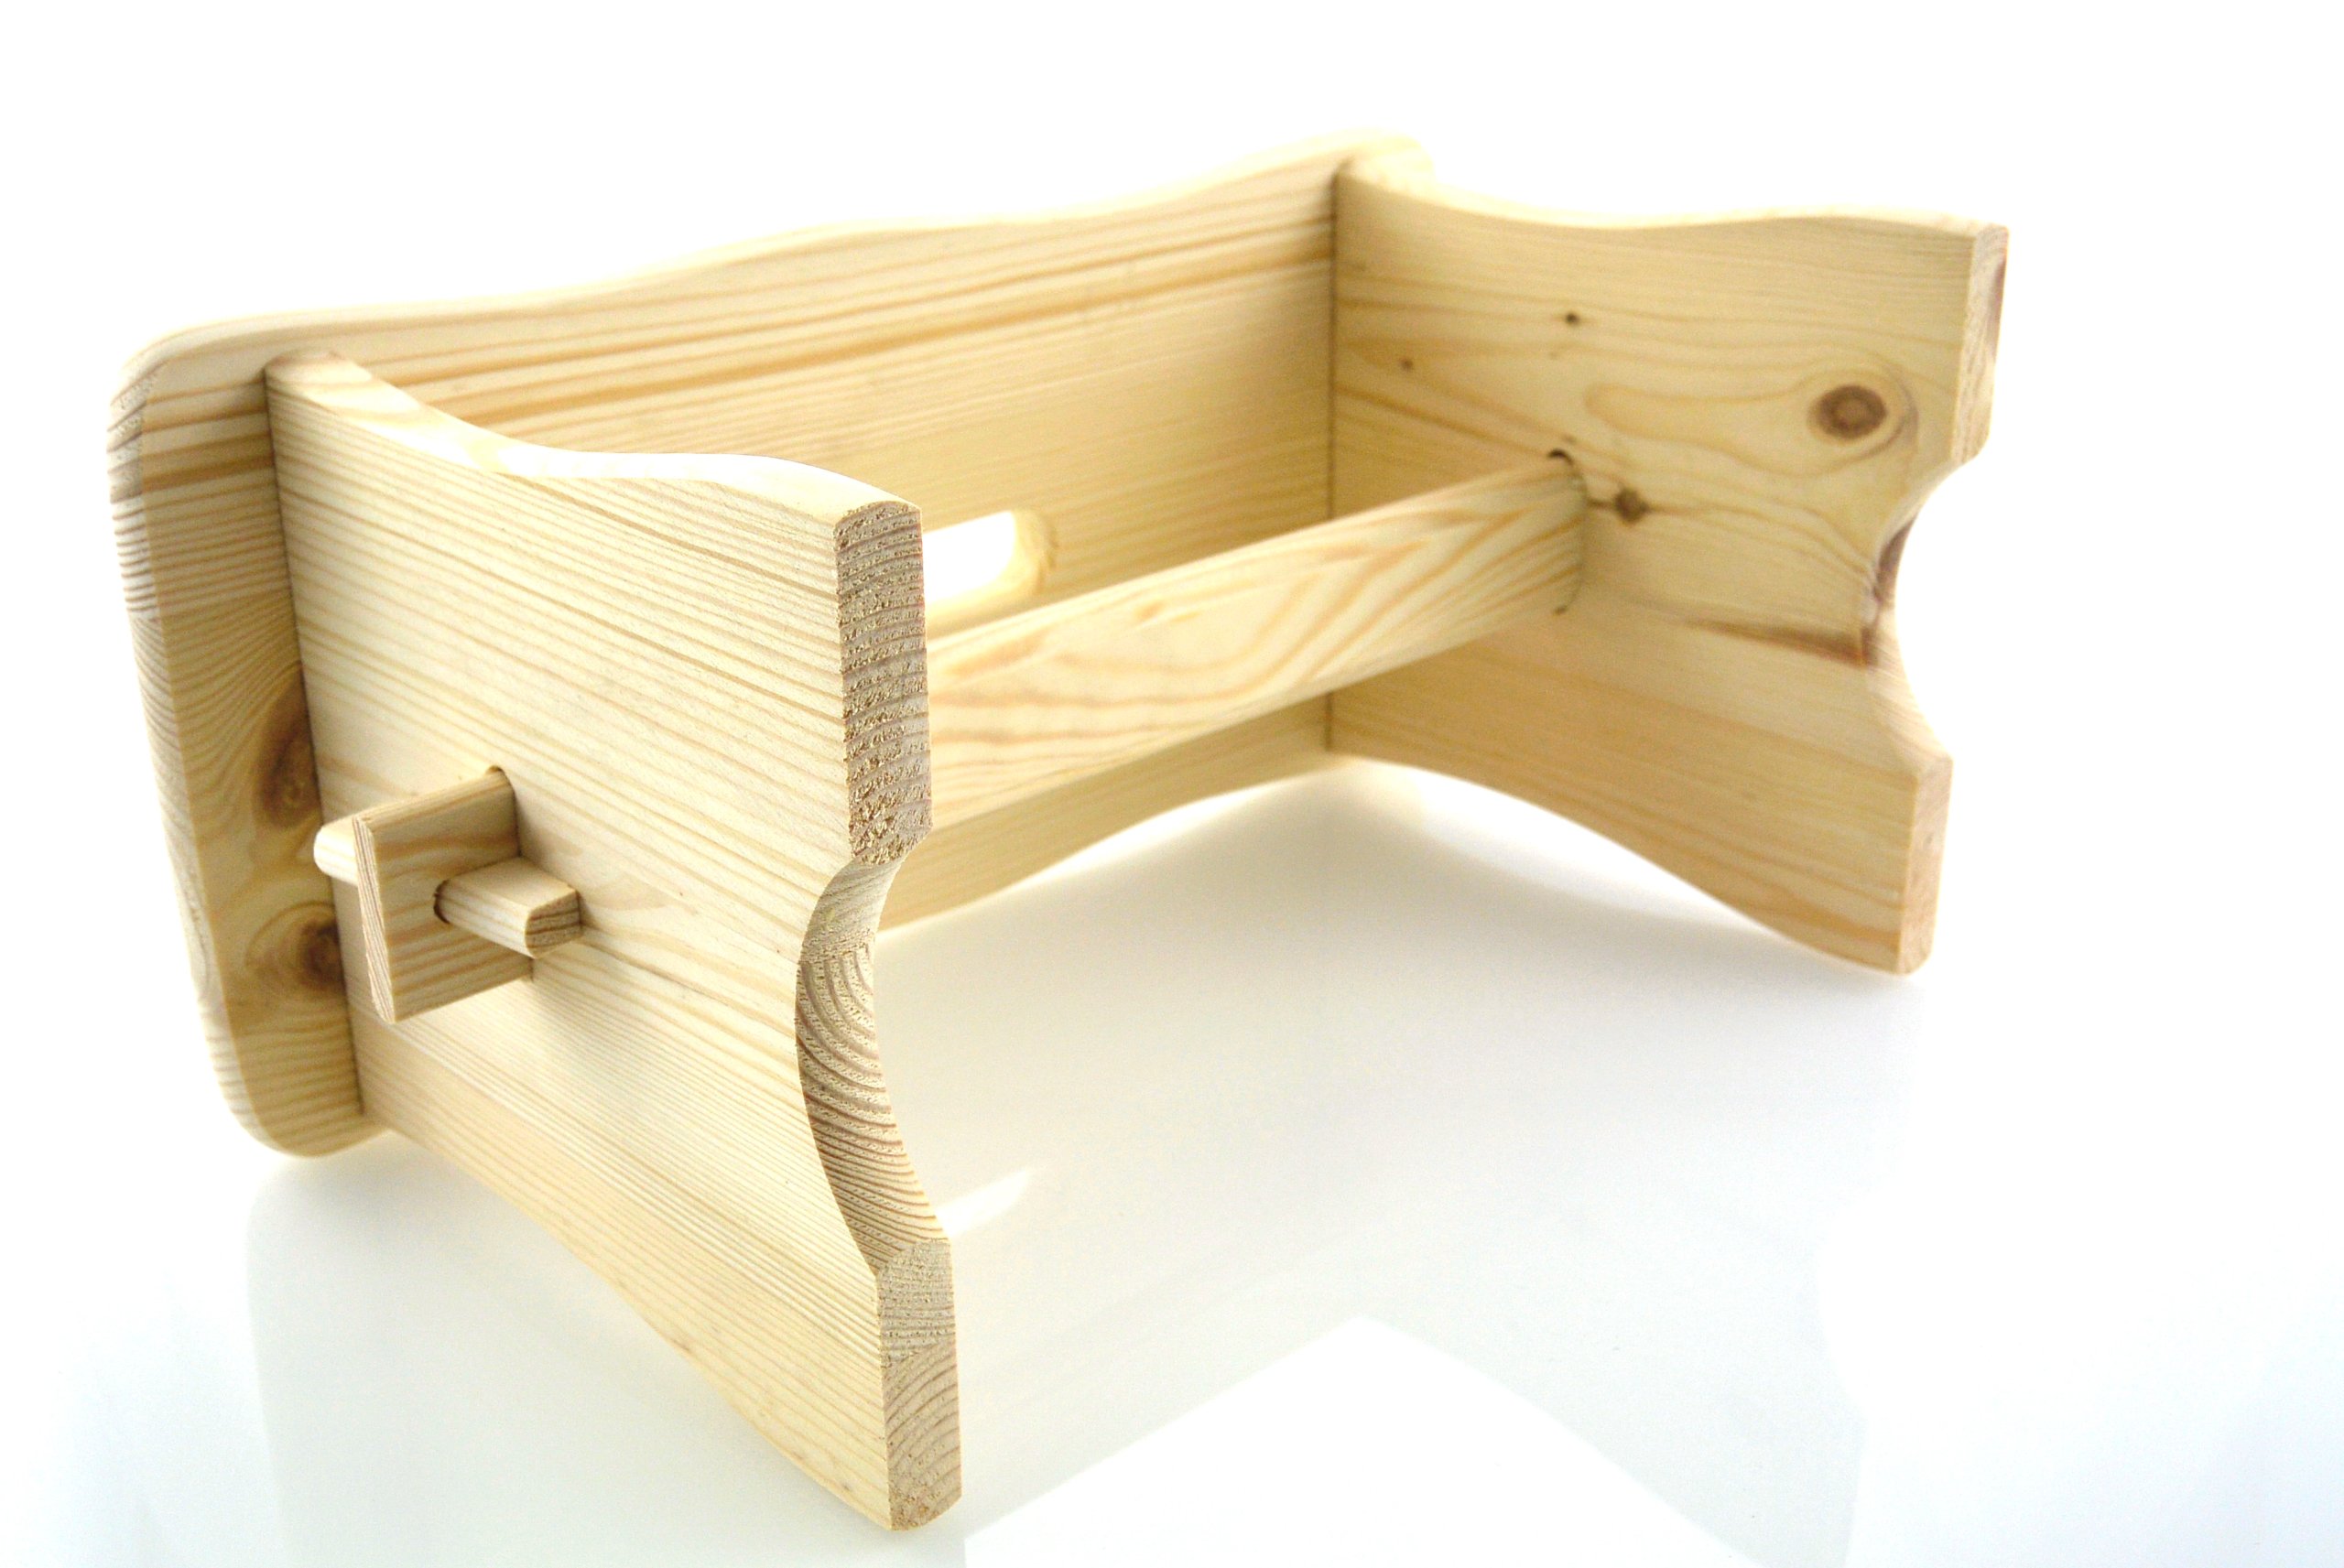 Stołek taboret drewniany RYCZKA krzesełko,zydel Waga (z opakowaniem) 1.5 kg